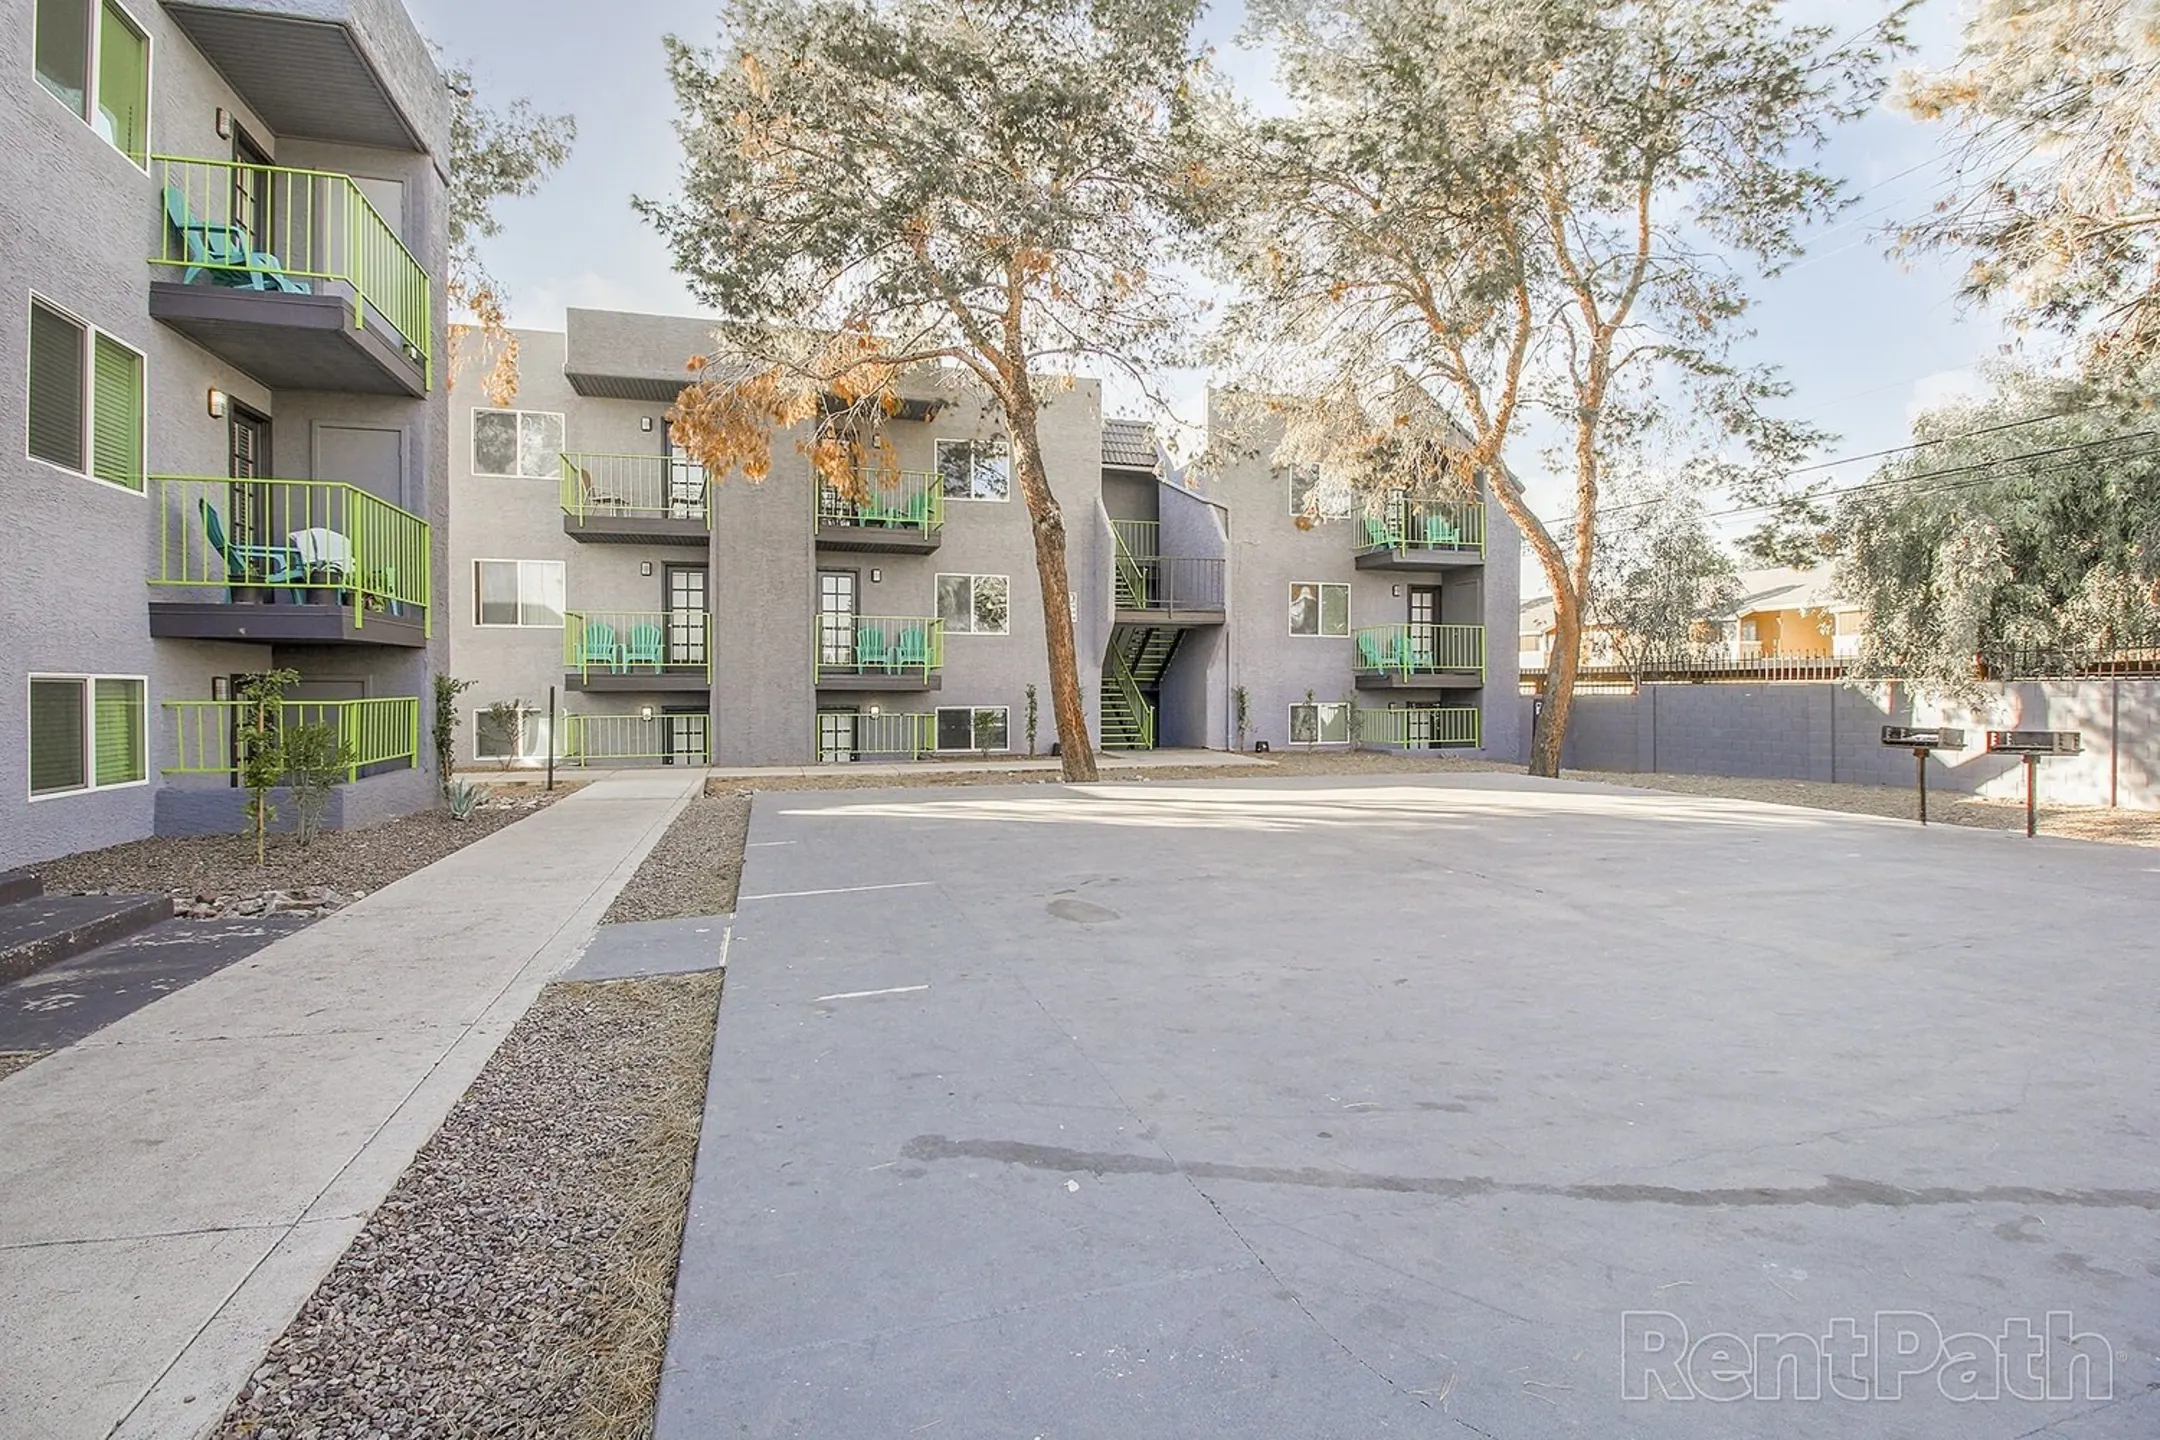 Building - New Horizons Apartments - Phoenix, AZ